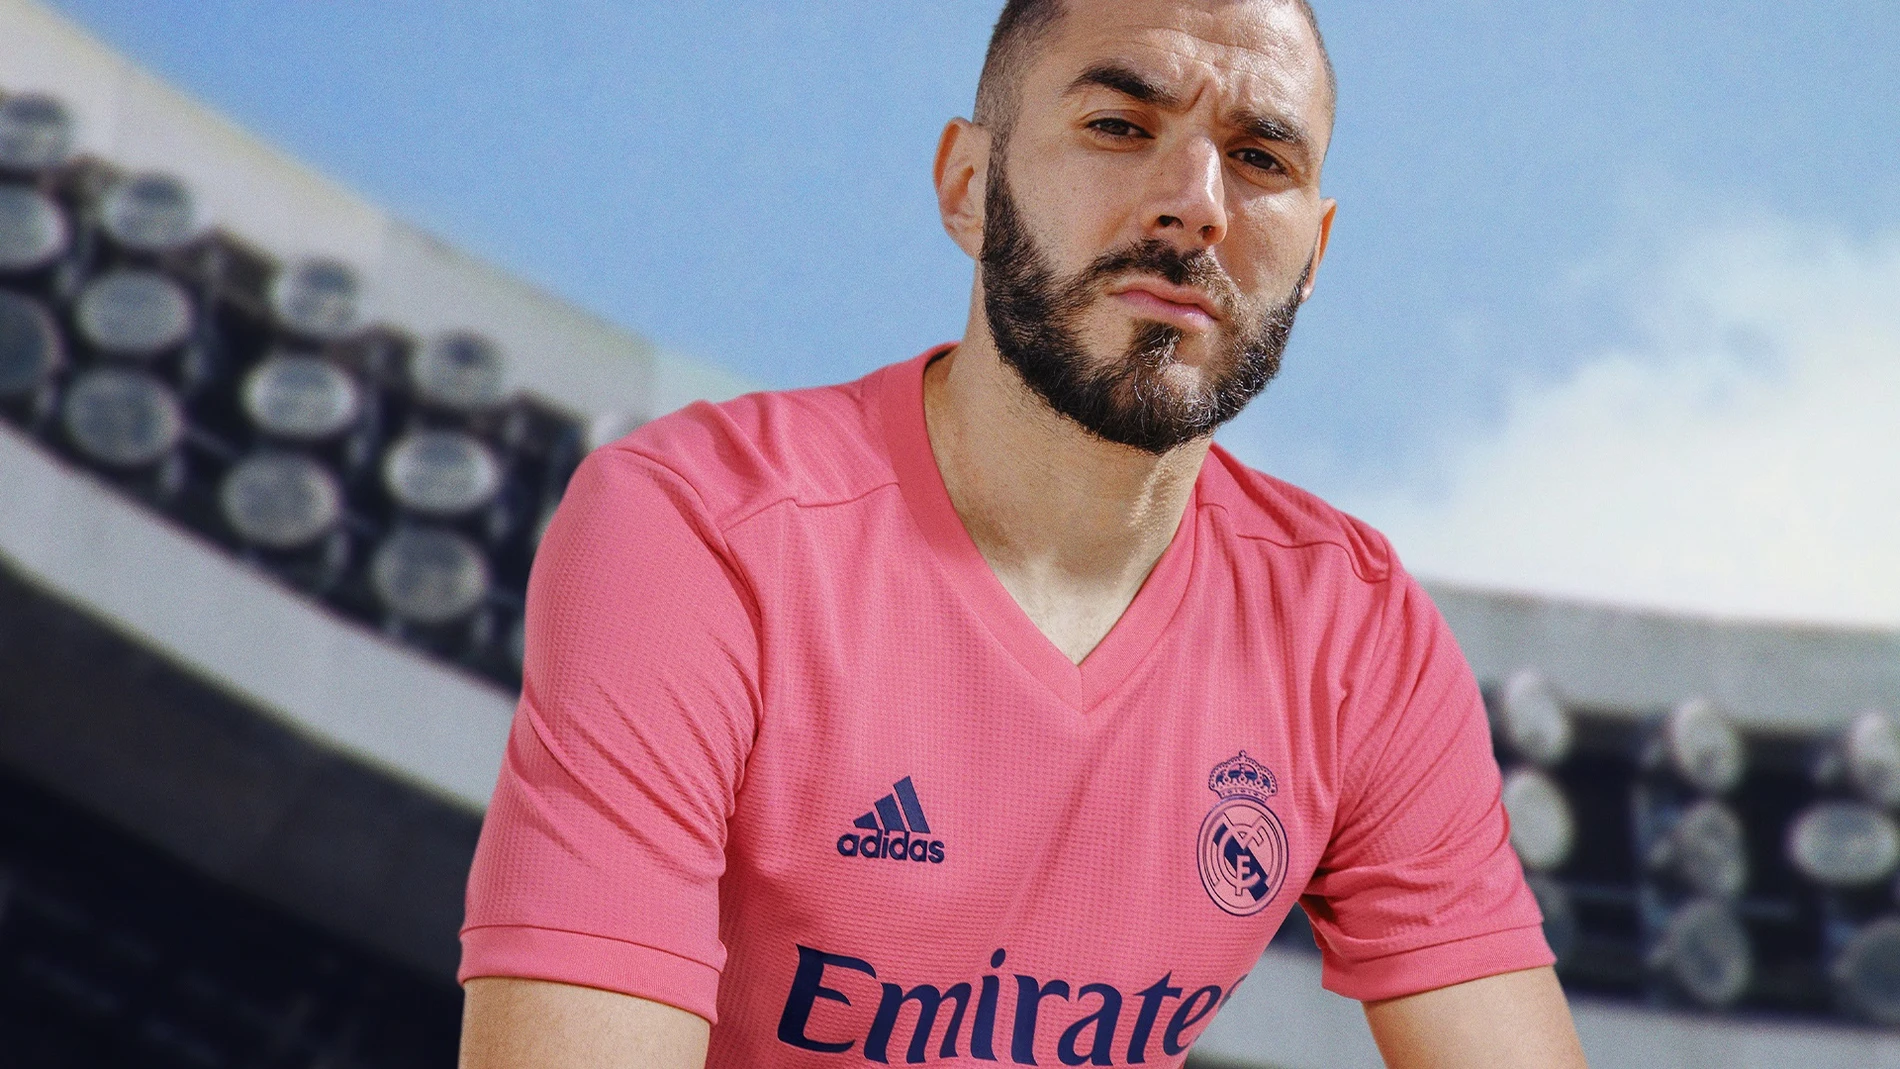 El Real Madrid combina blanco y rosa en sus nuevas camisetas para la temporada 2020/21